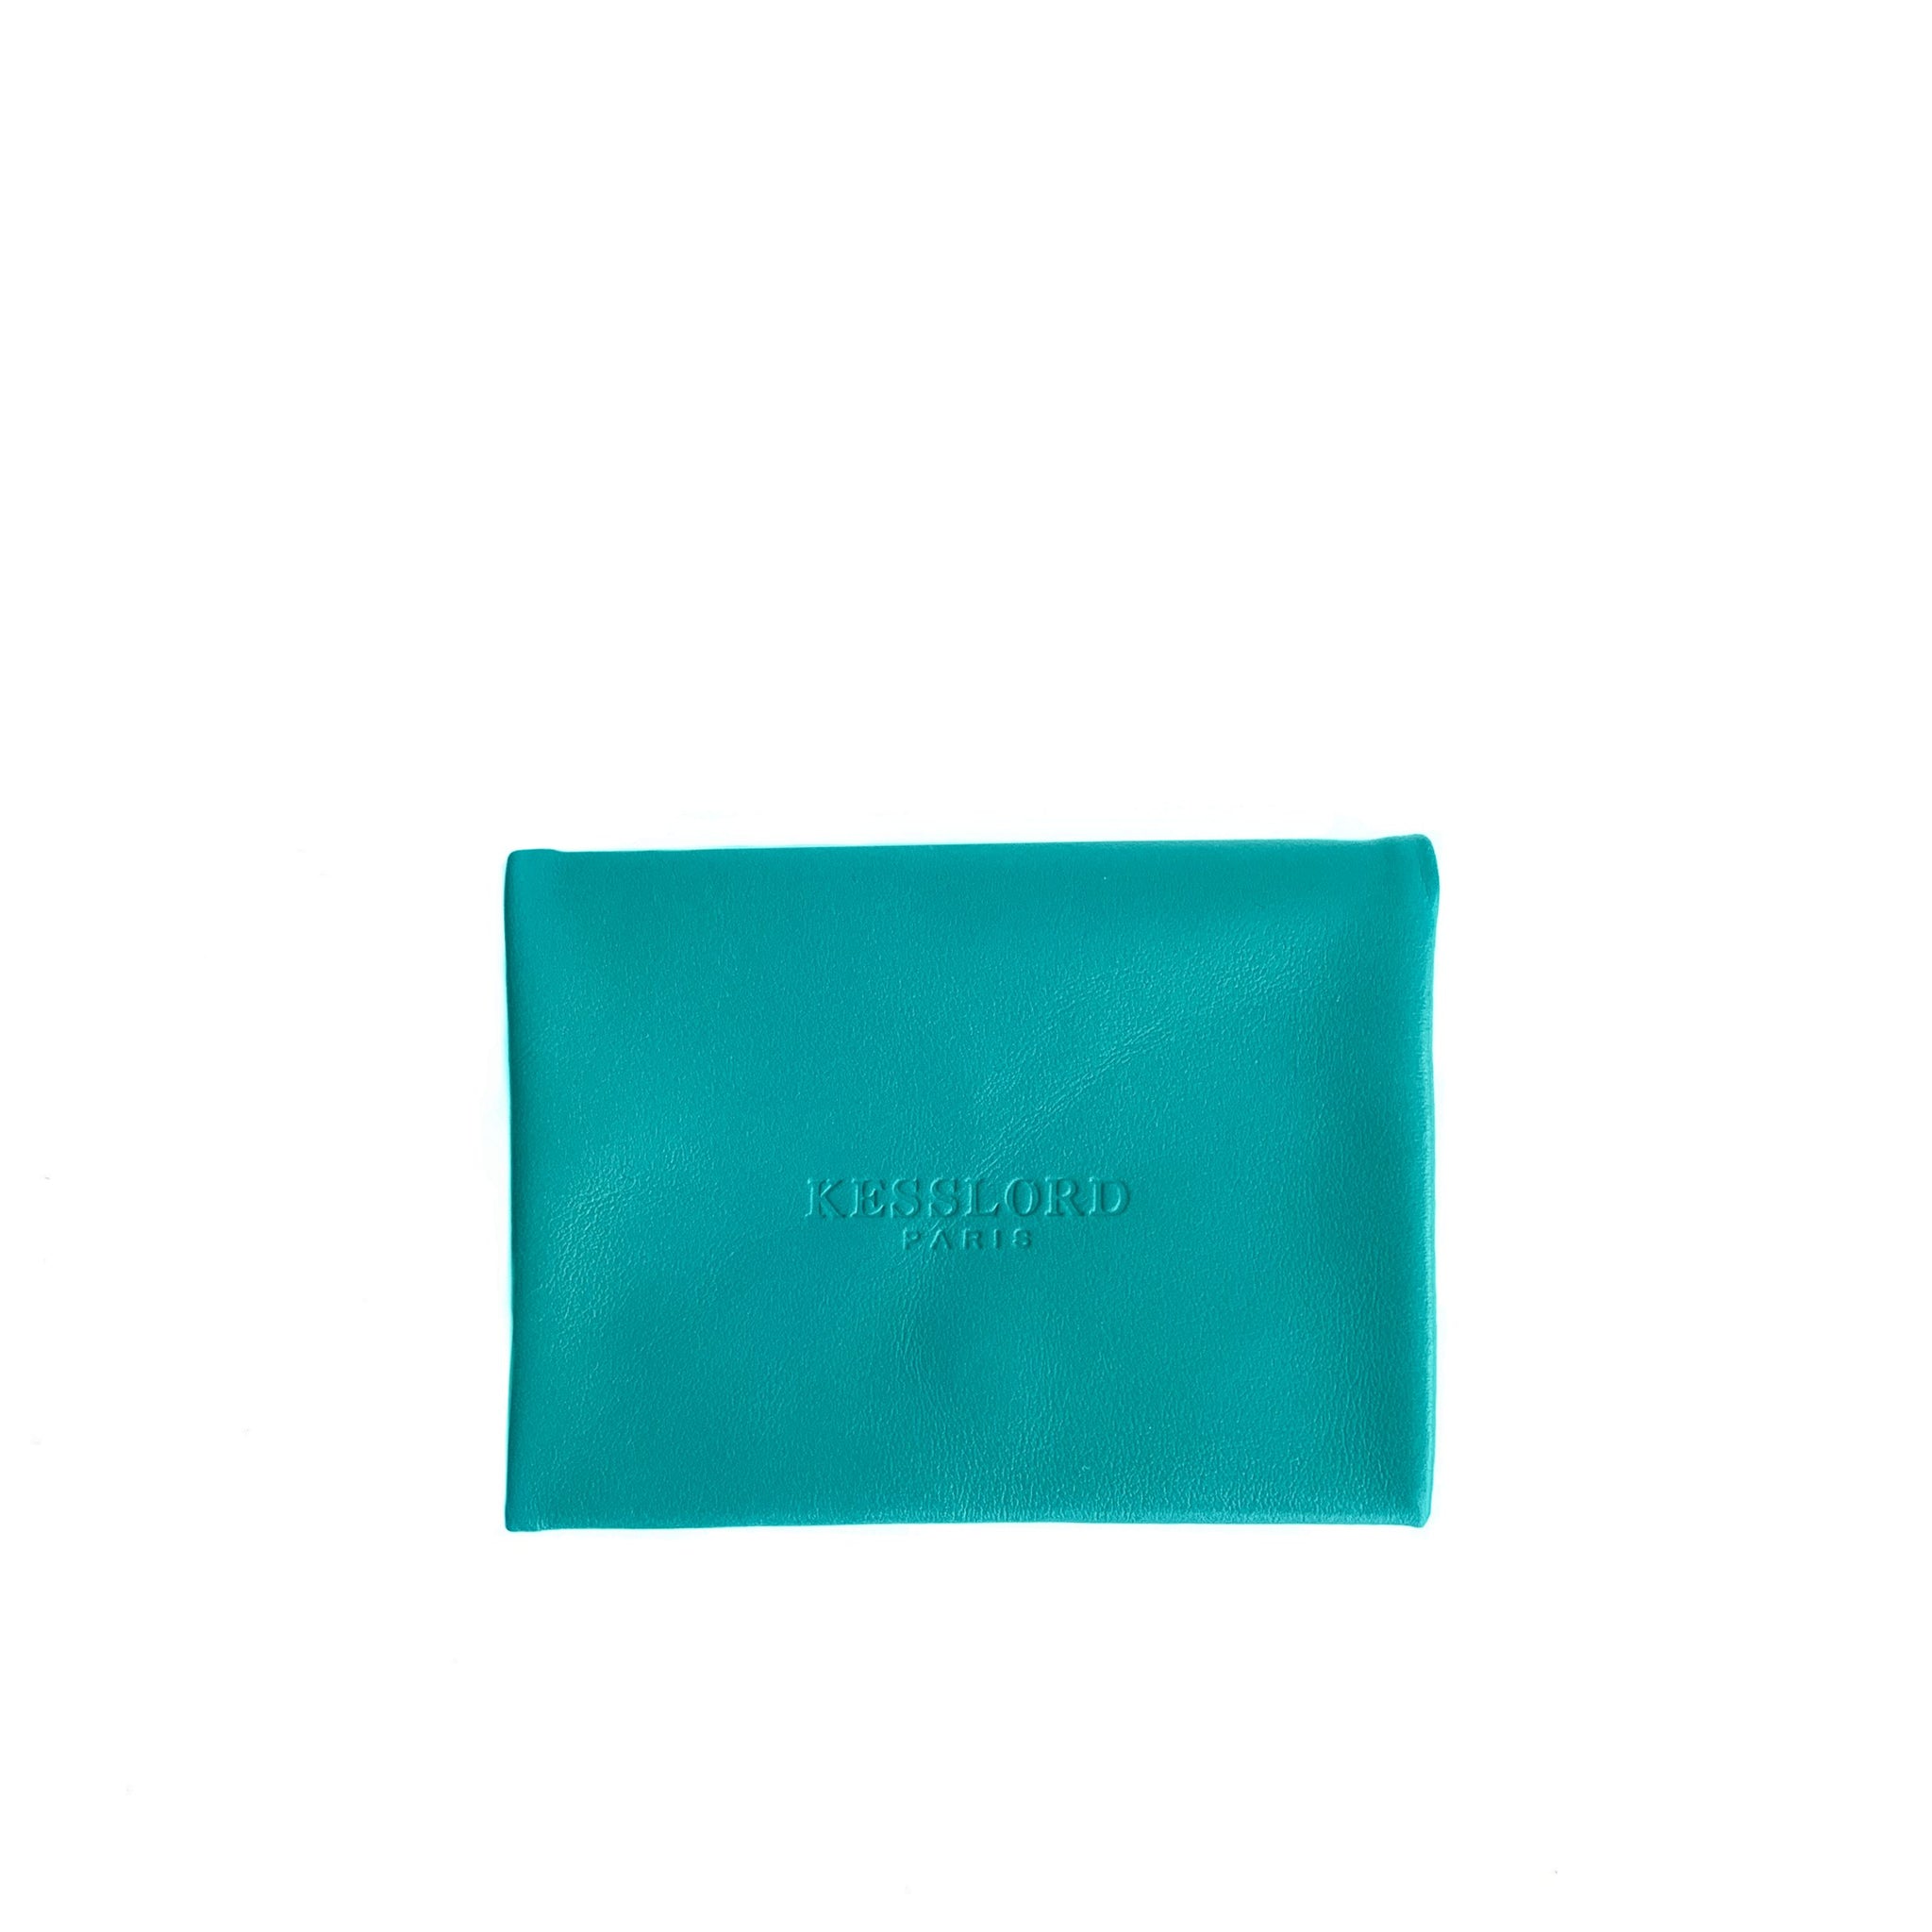 Leather wallet, from Paris Saint-Honoré boutique – Obilis Paris